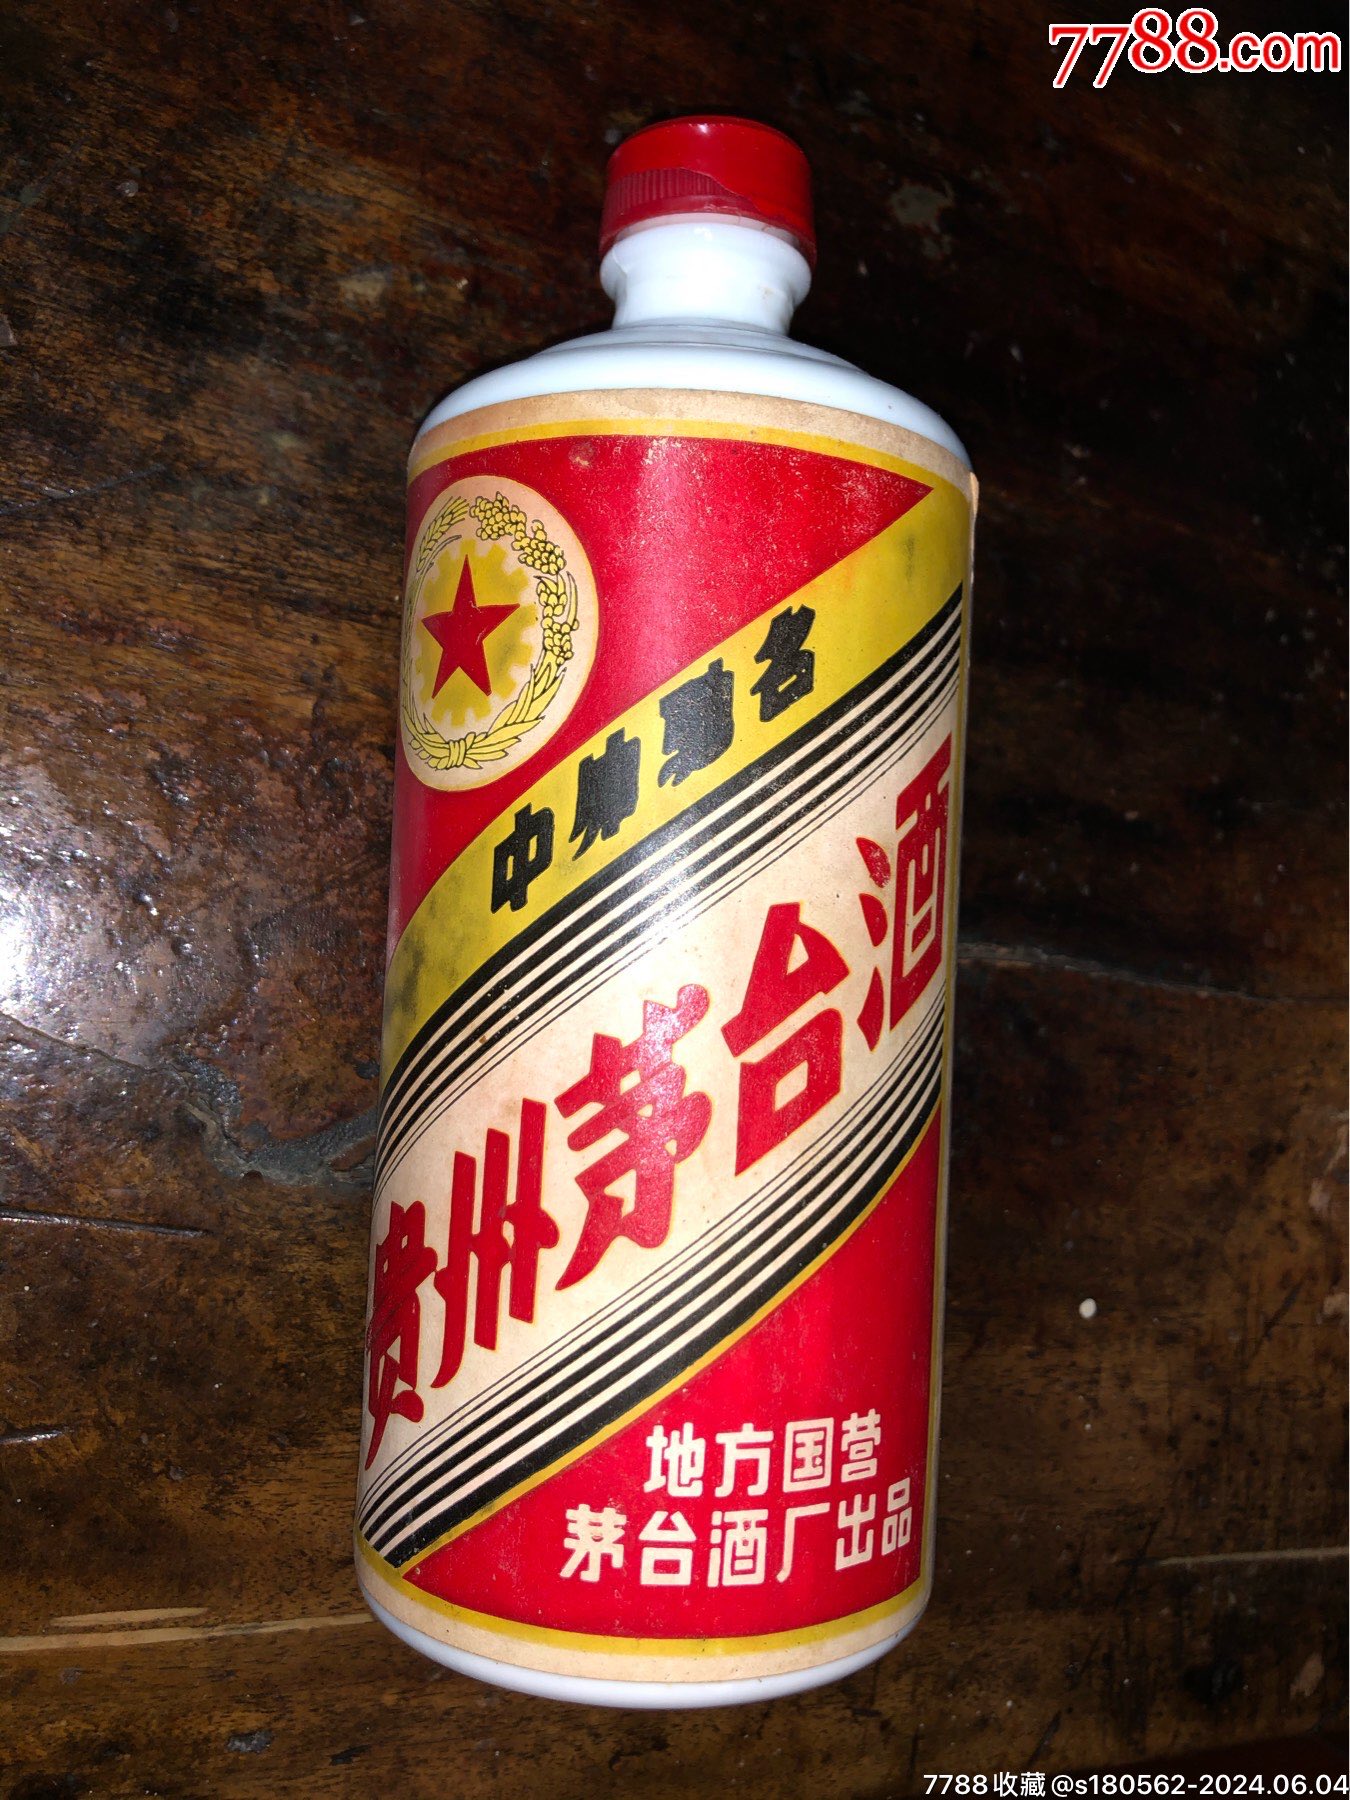 1986年贵州茅台酒白酒瓶